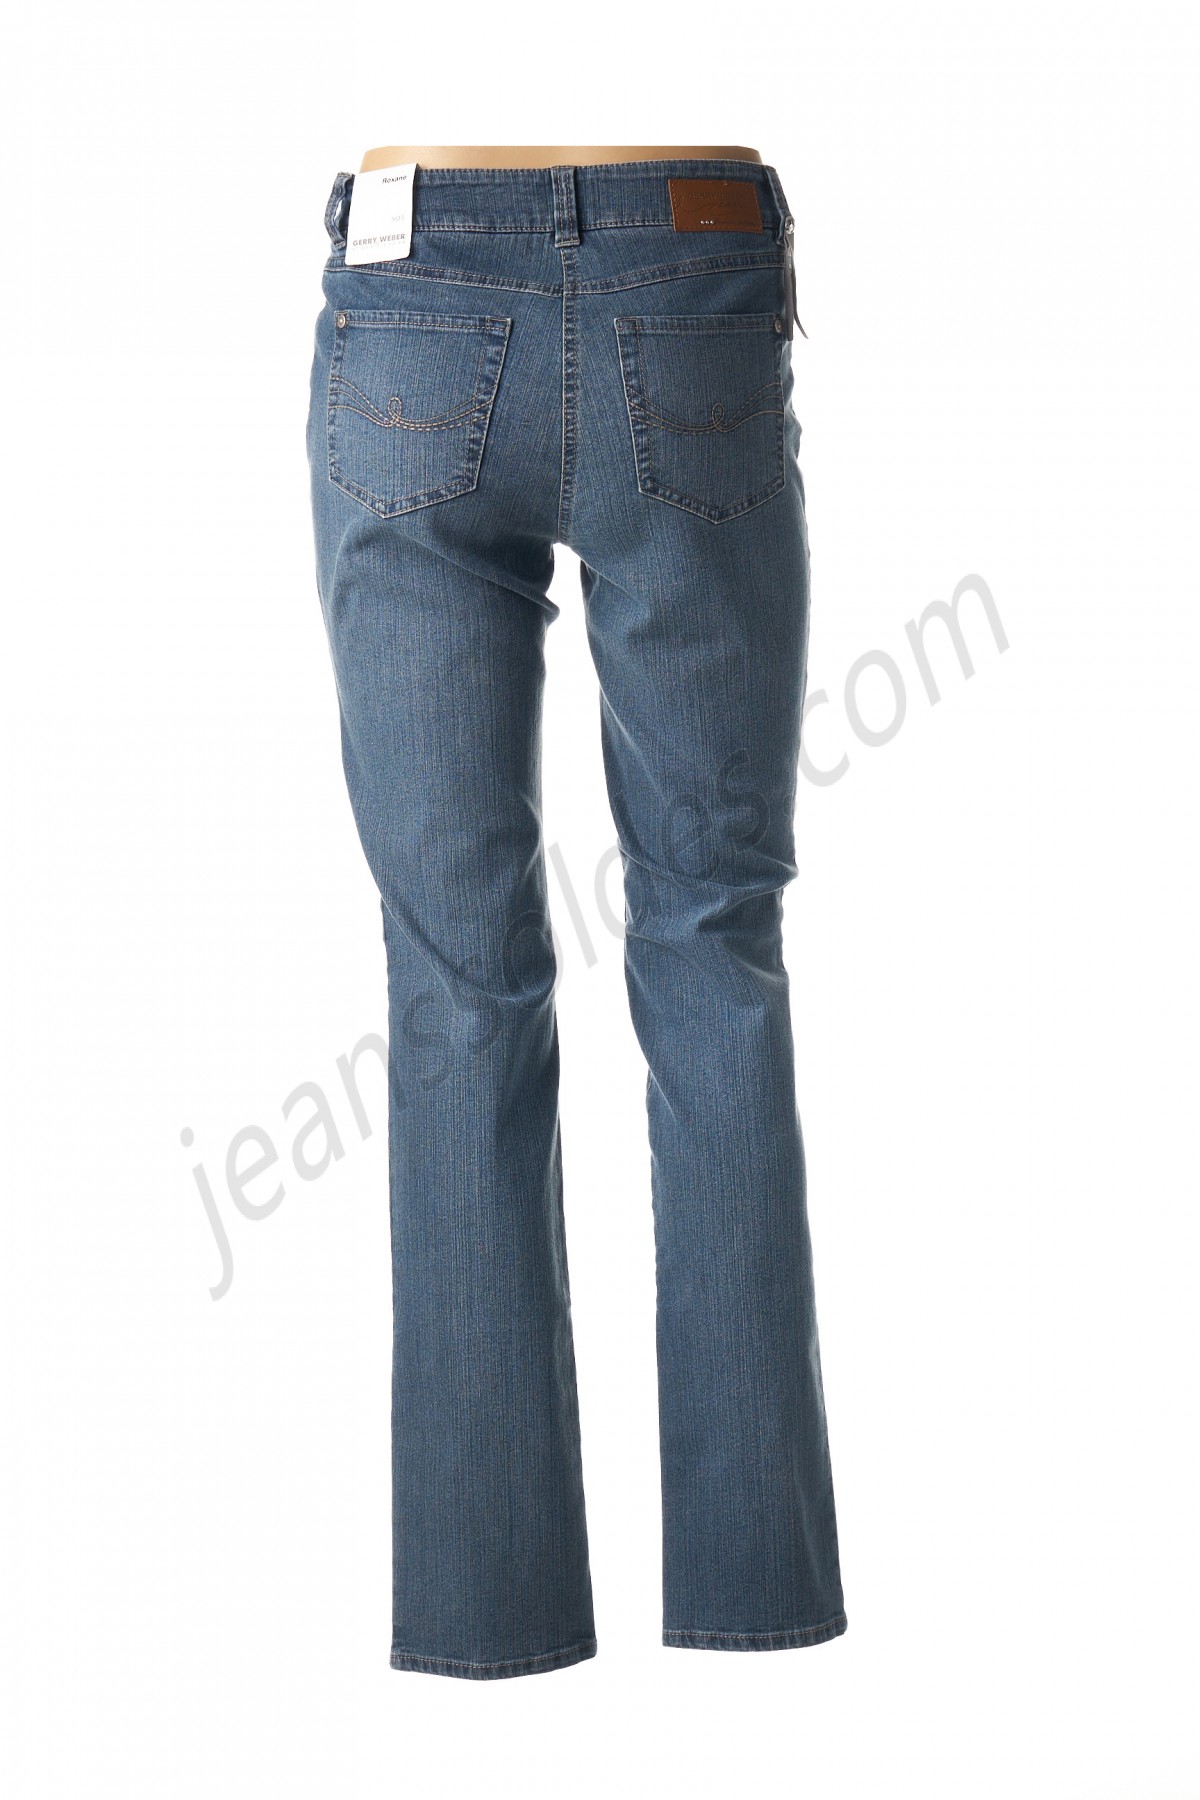 gerry weber-Jeans coupe droite prix d’amis - -1